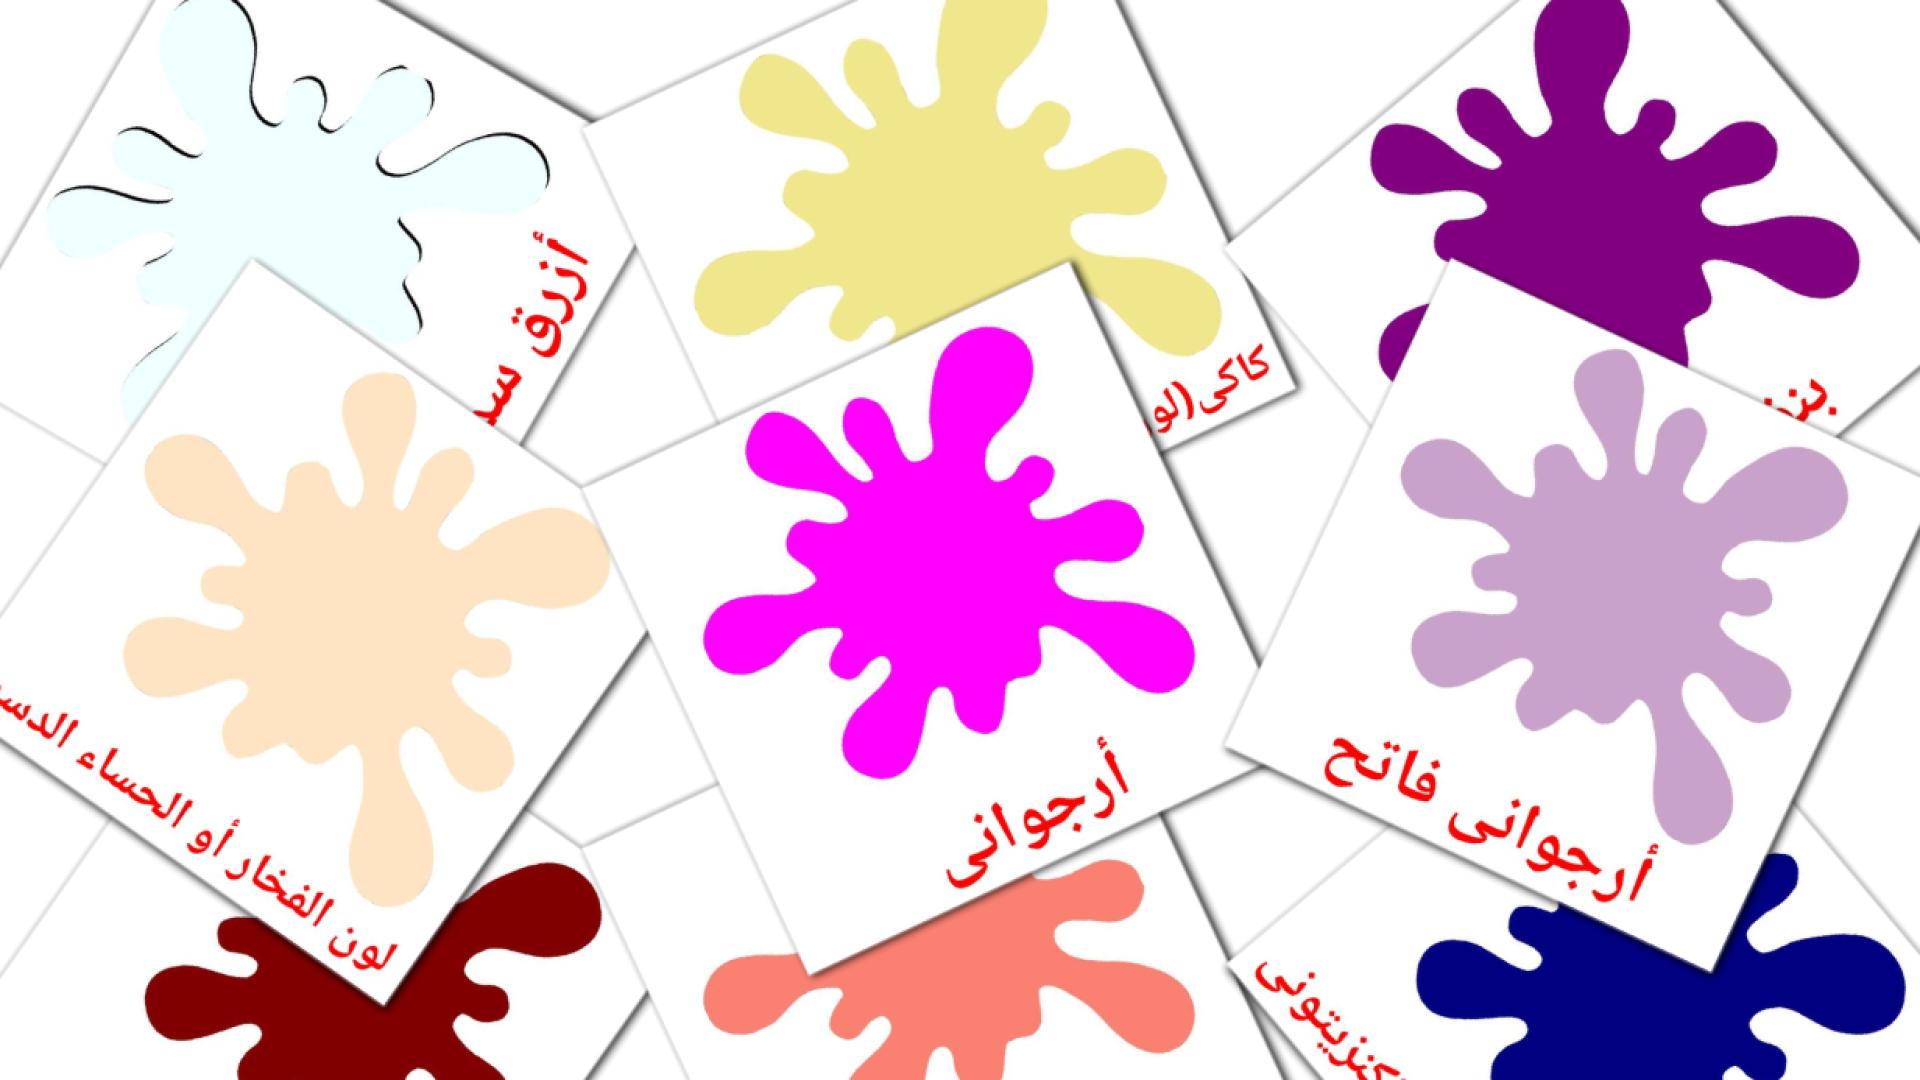 Couleurs Secondaires - cartes de vocabulaire arabe